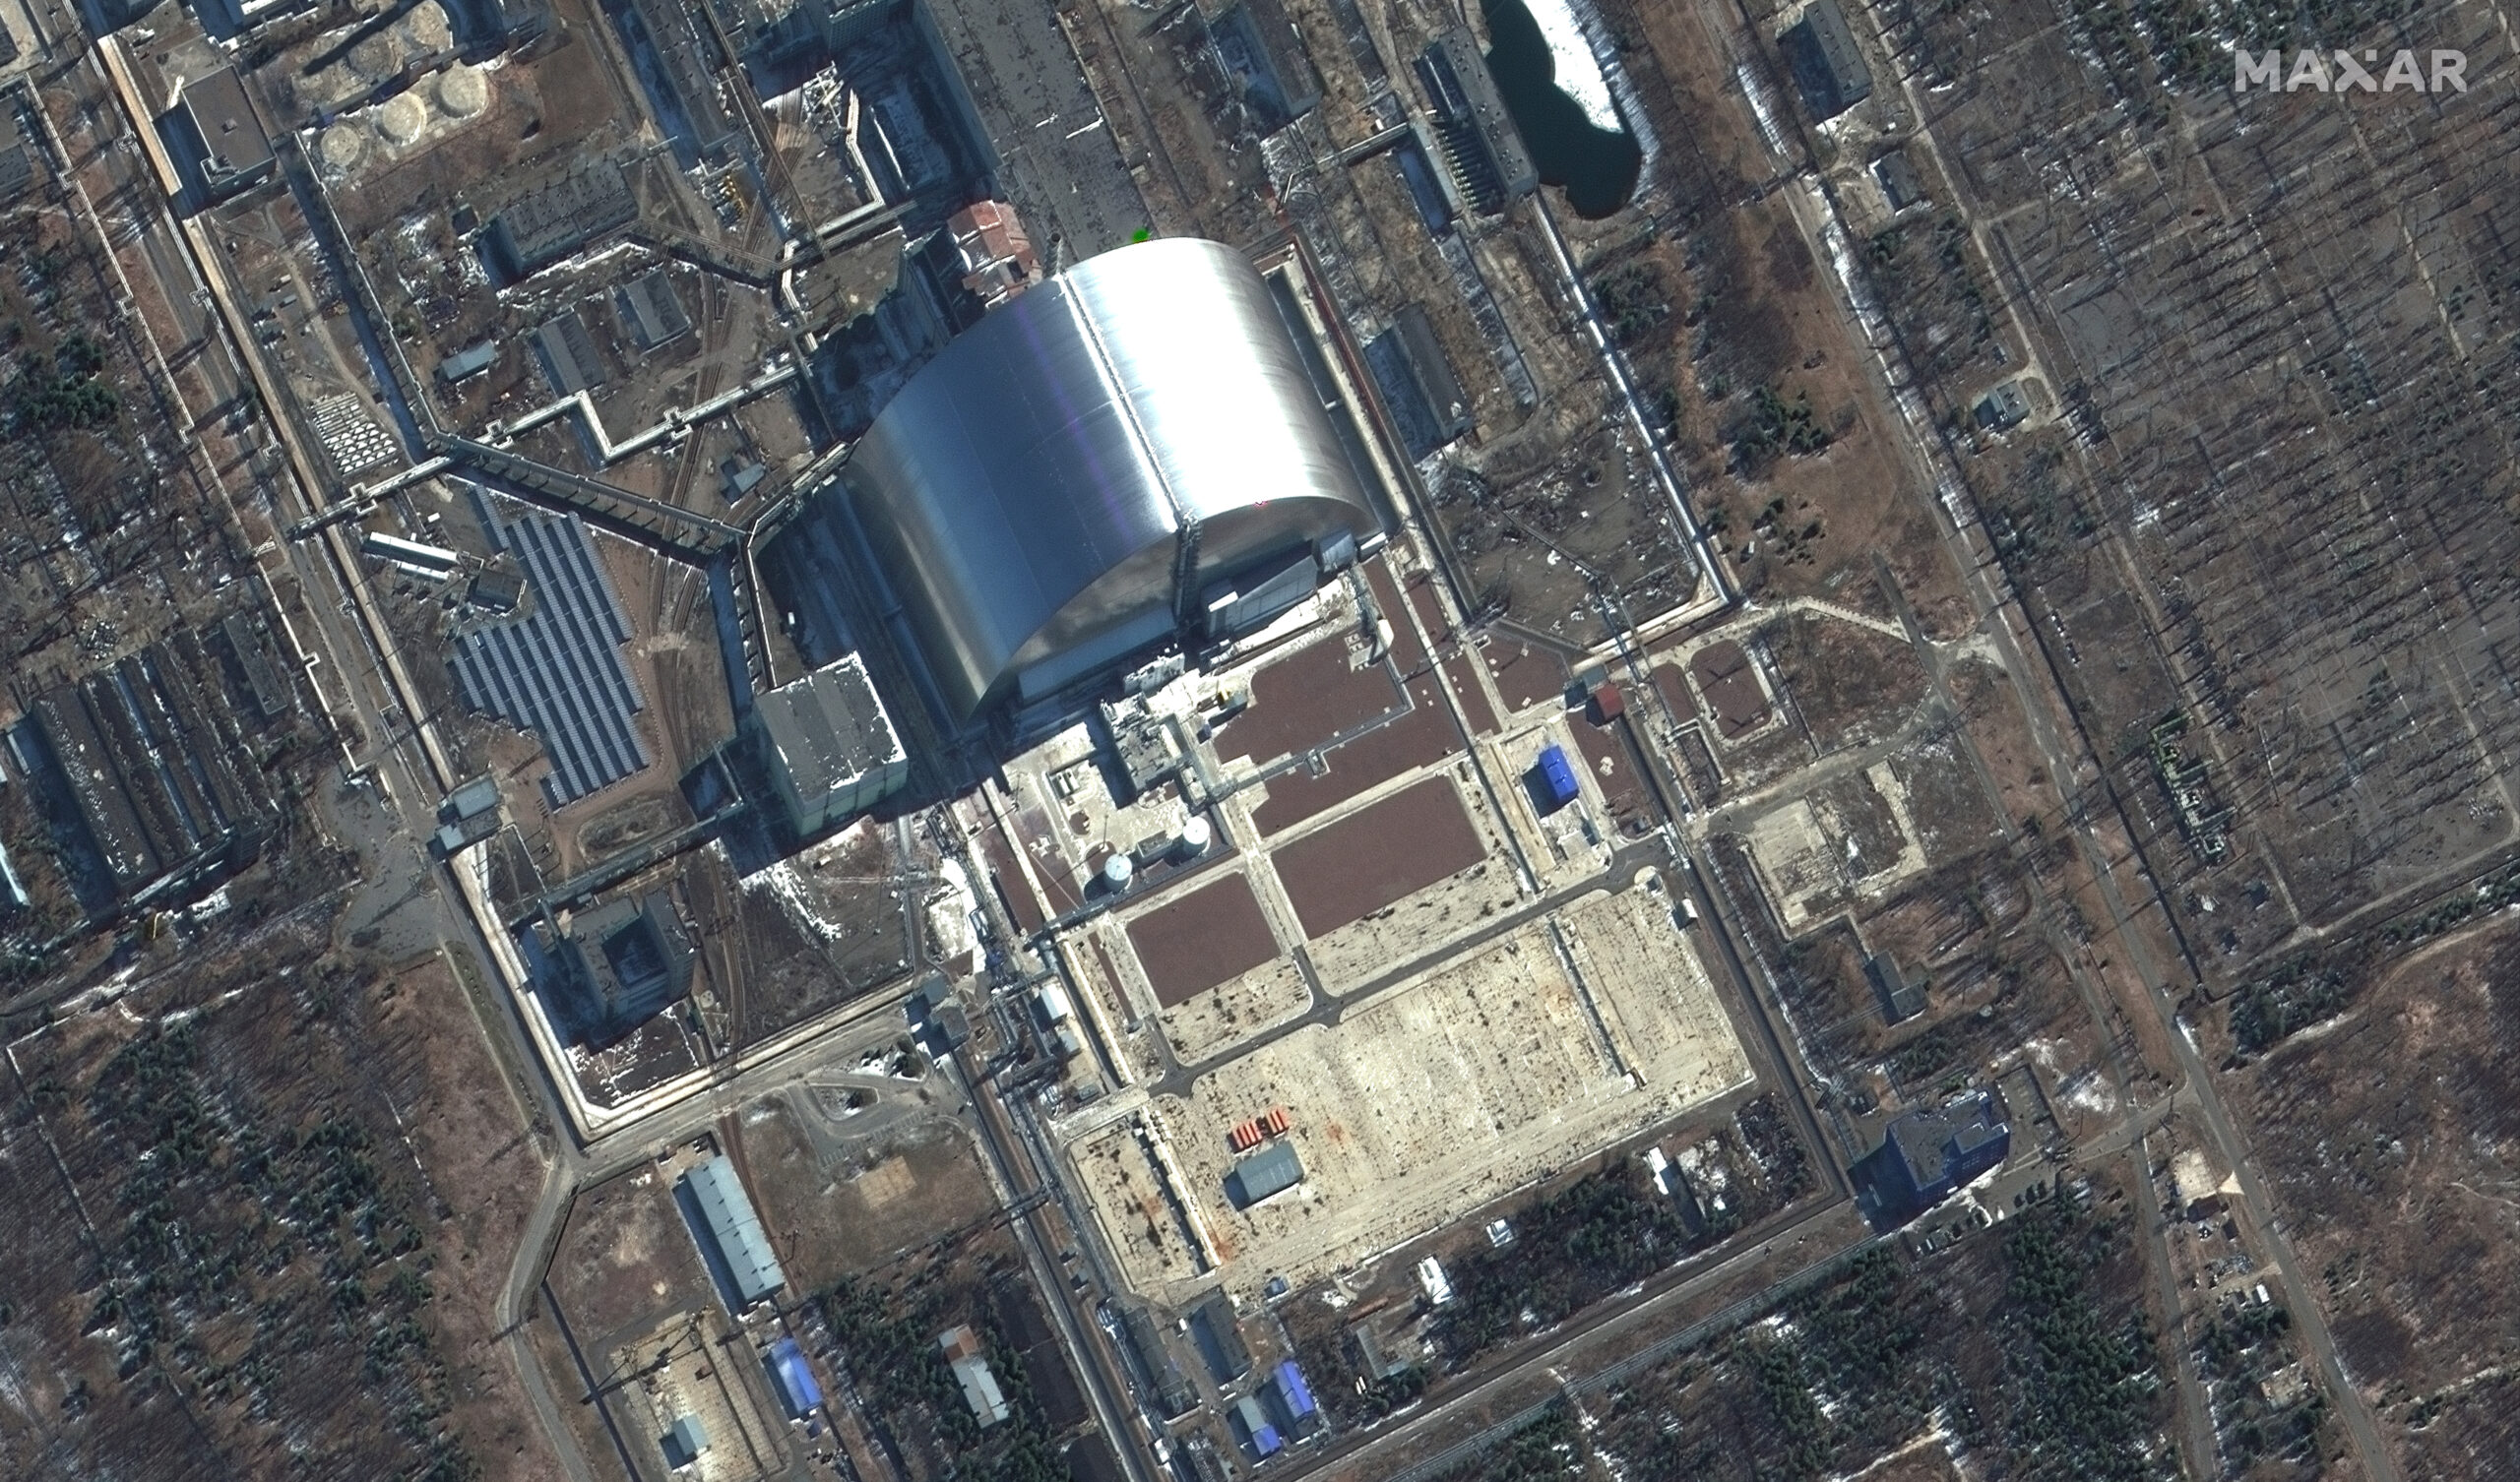 Dieses von Maxar Technologies zur Verfügung gestellte Satellitenbild zeigt eine Nahaufnahme der Nuklearanlagen von Tschernobyl in der Ukraine während der russischen Invasion.